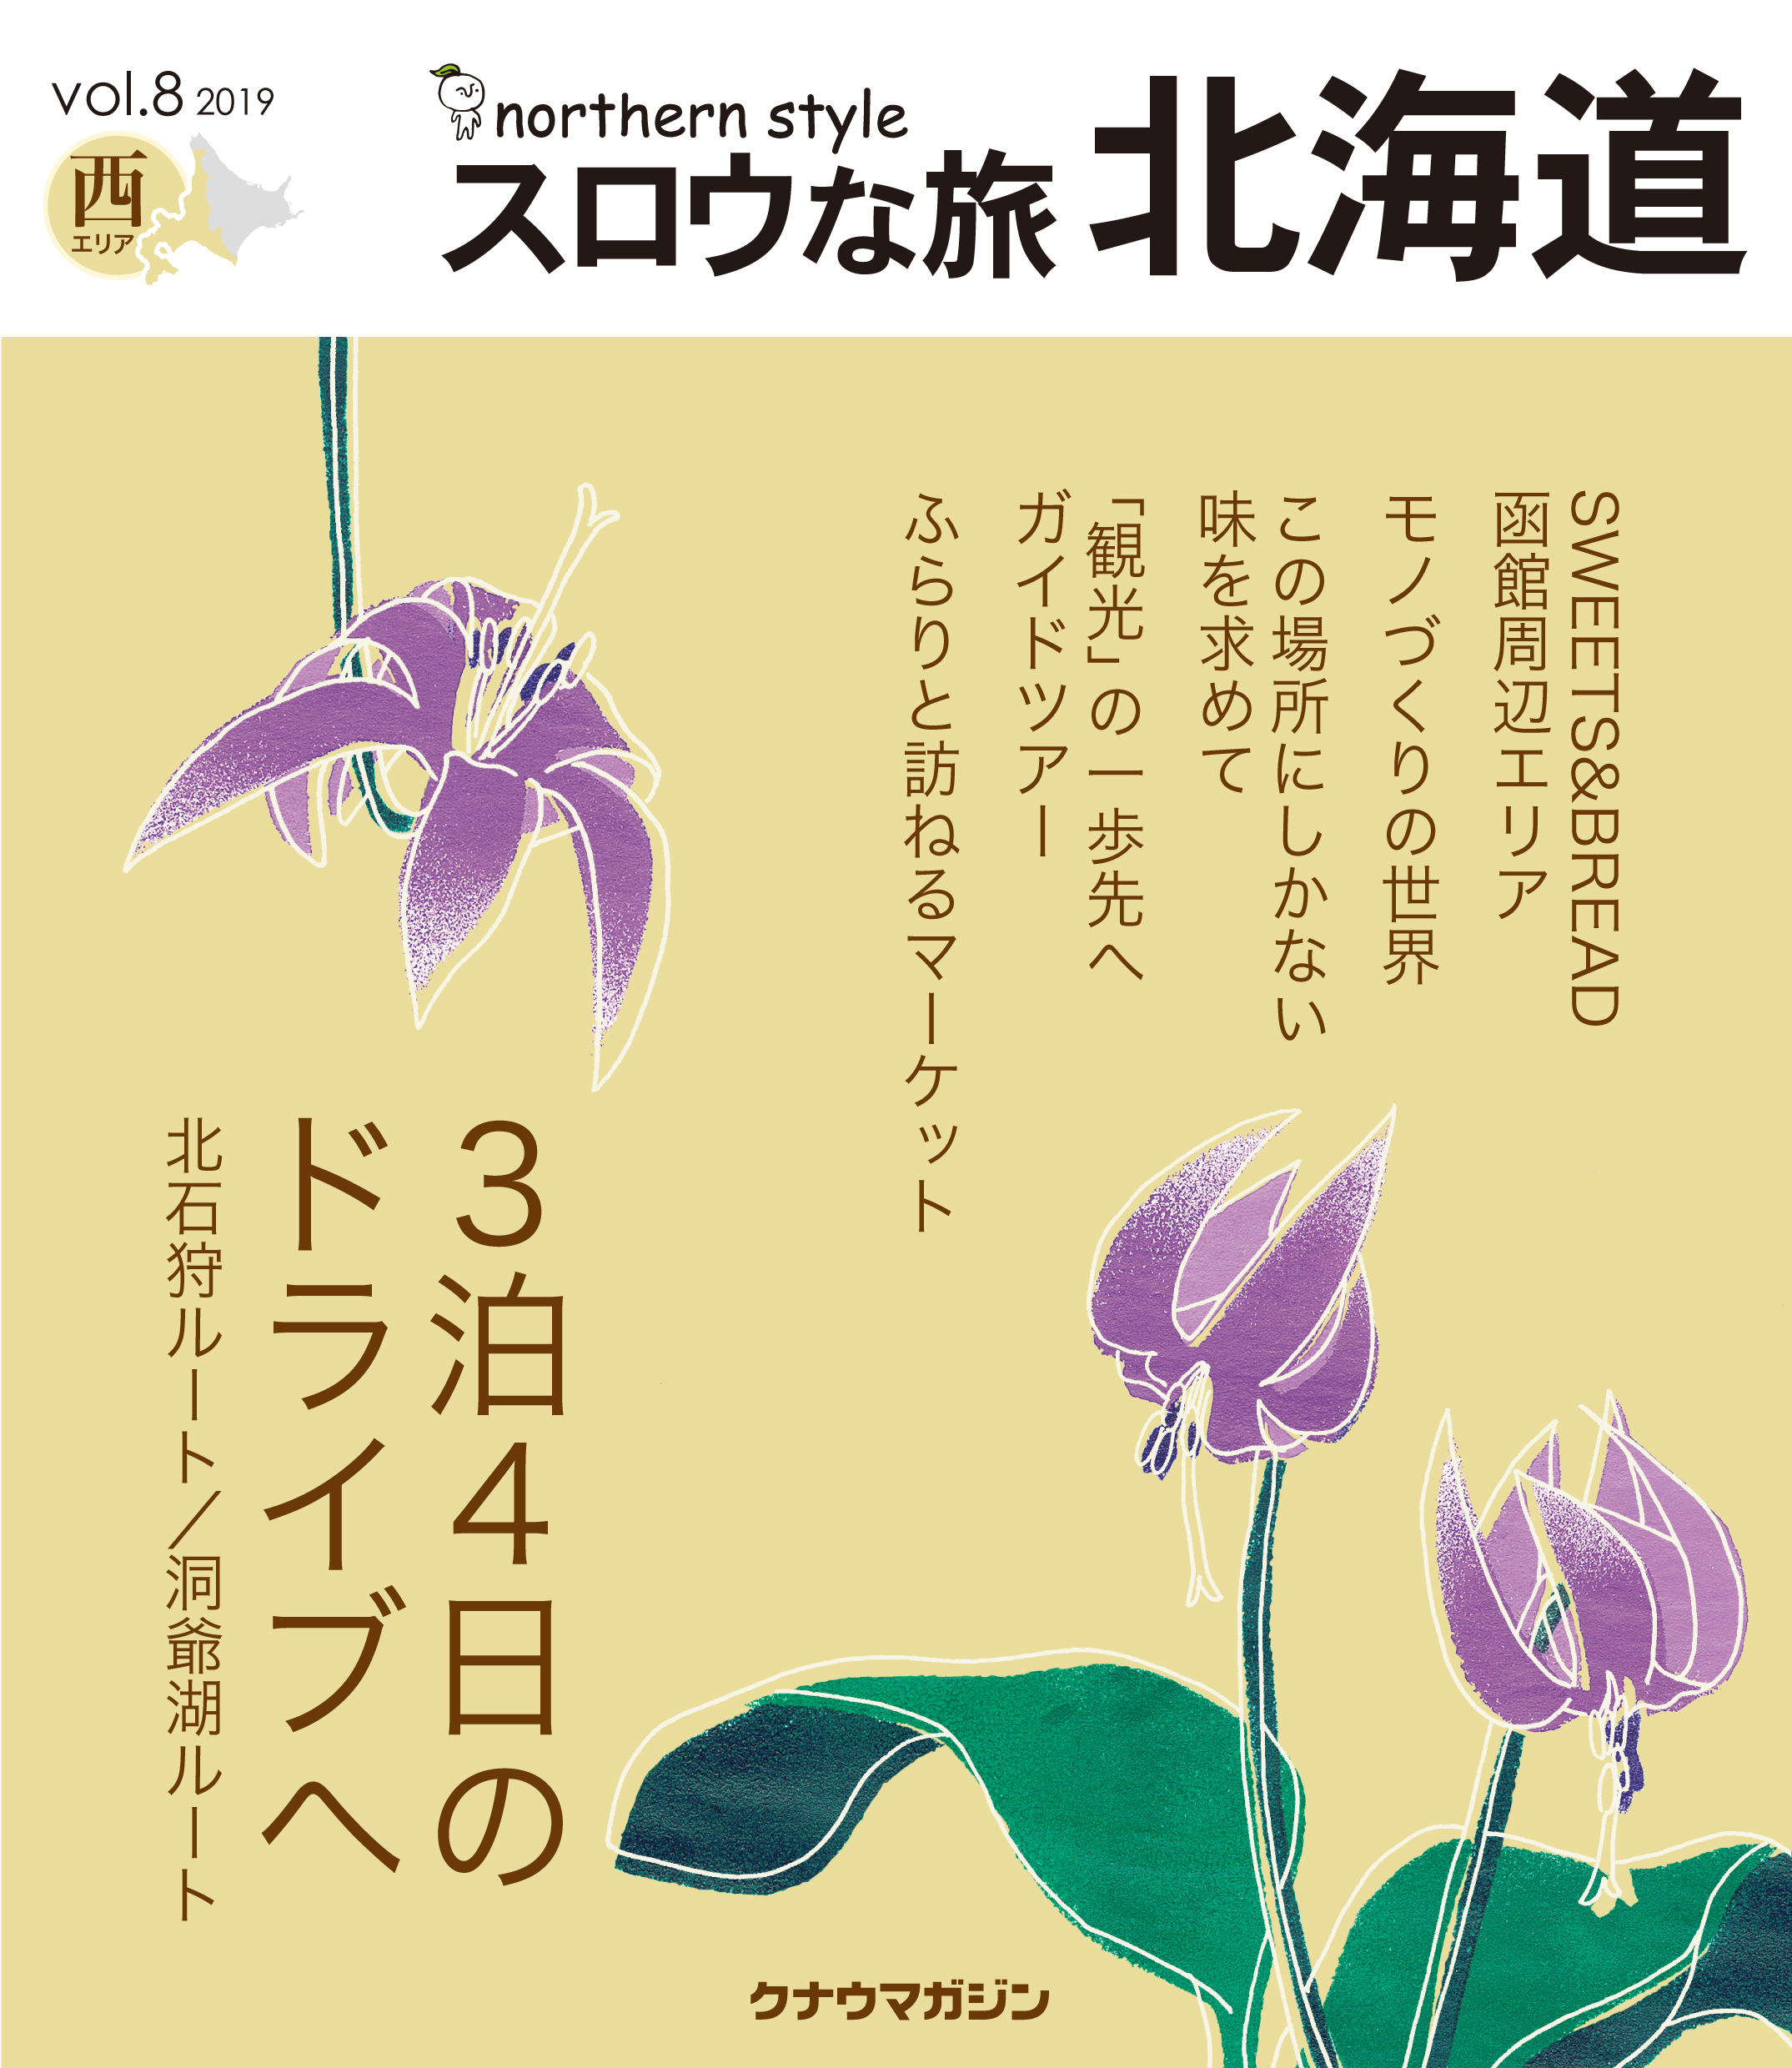 ゆったりと楽しめる 北海道らしい旅を提案 スロウな旅 北海道 の最新号発行 ソーゴー印刷株式会社のプレスリリース